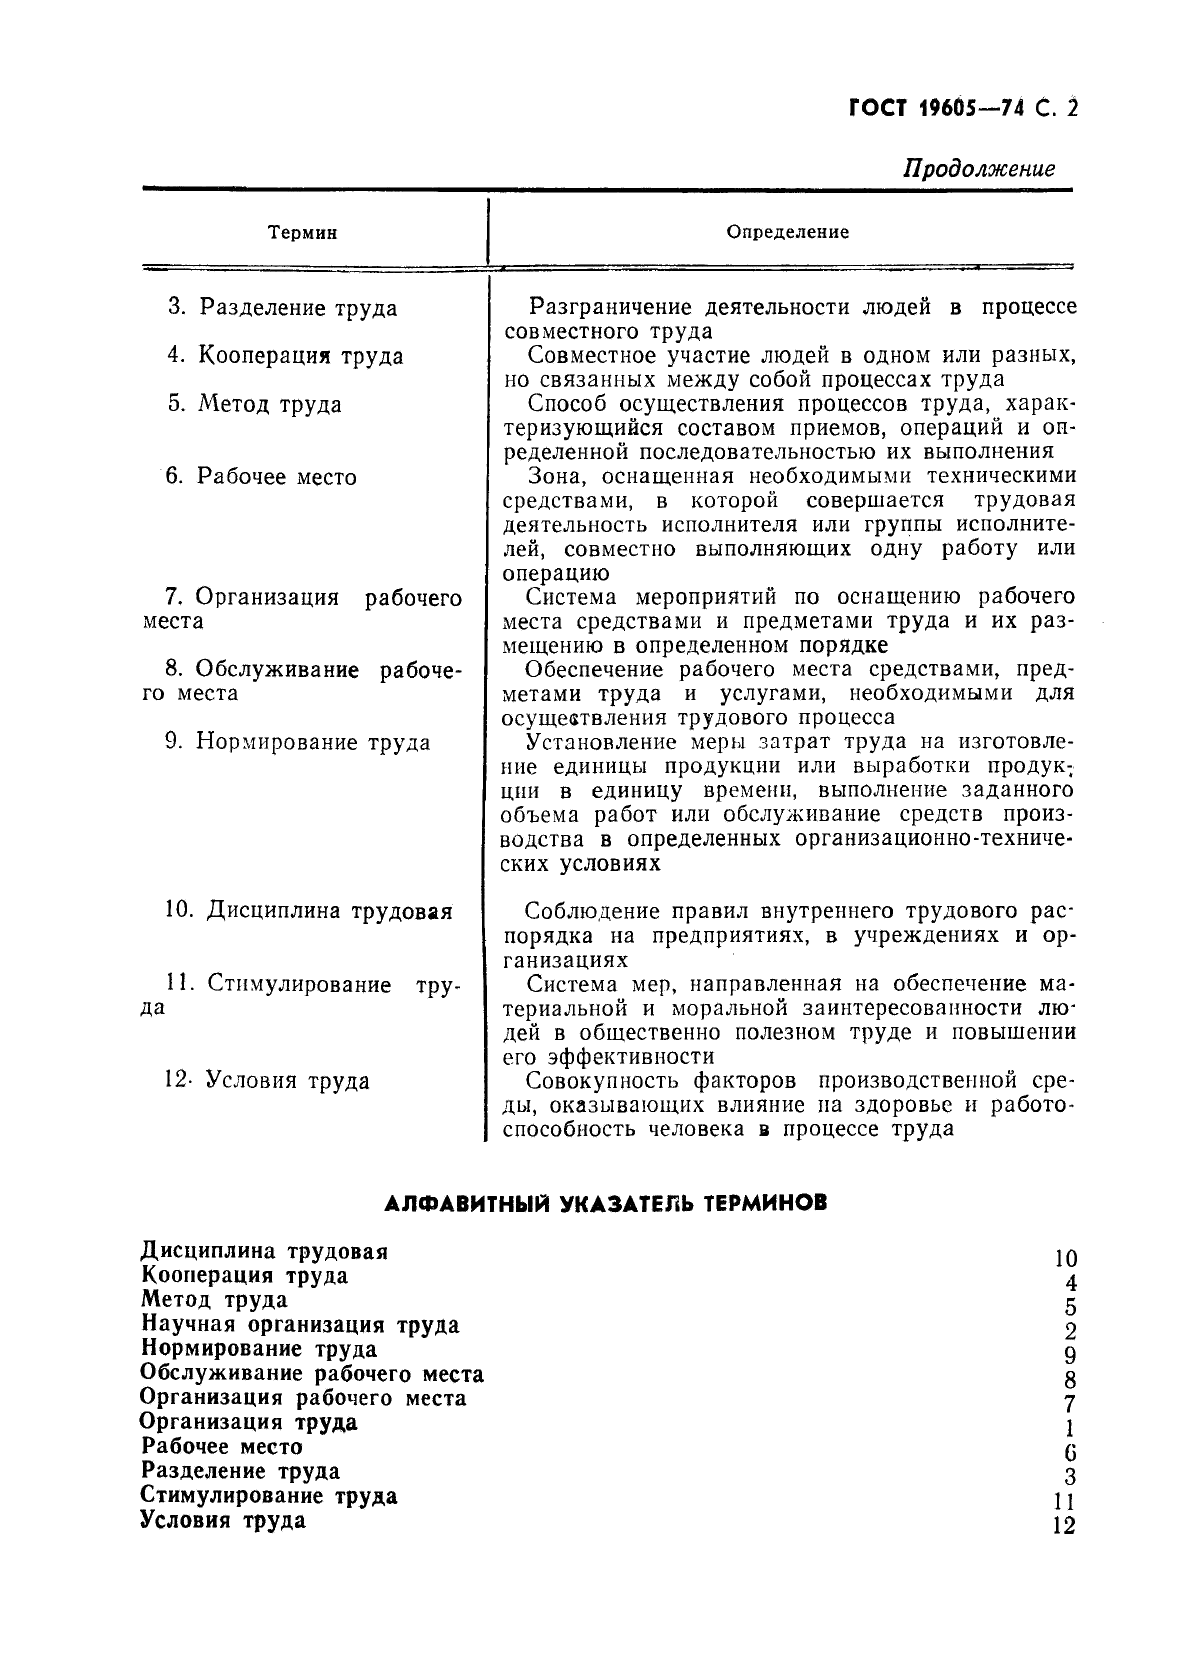 ГОСТ 19605-74 Организация труда. Основные понятия. Термины и определения (фото 3 из 4)